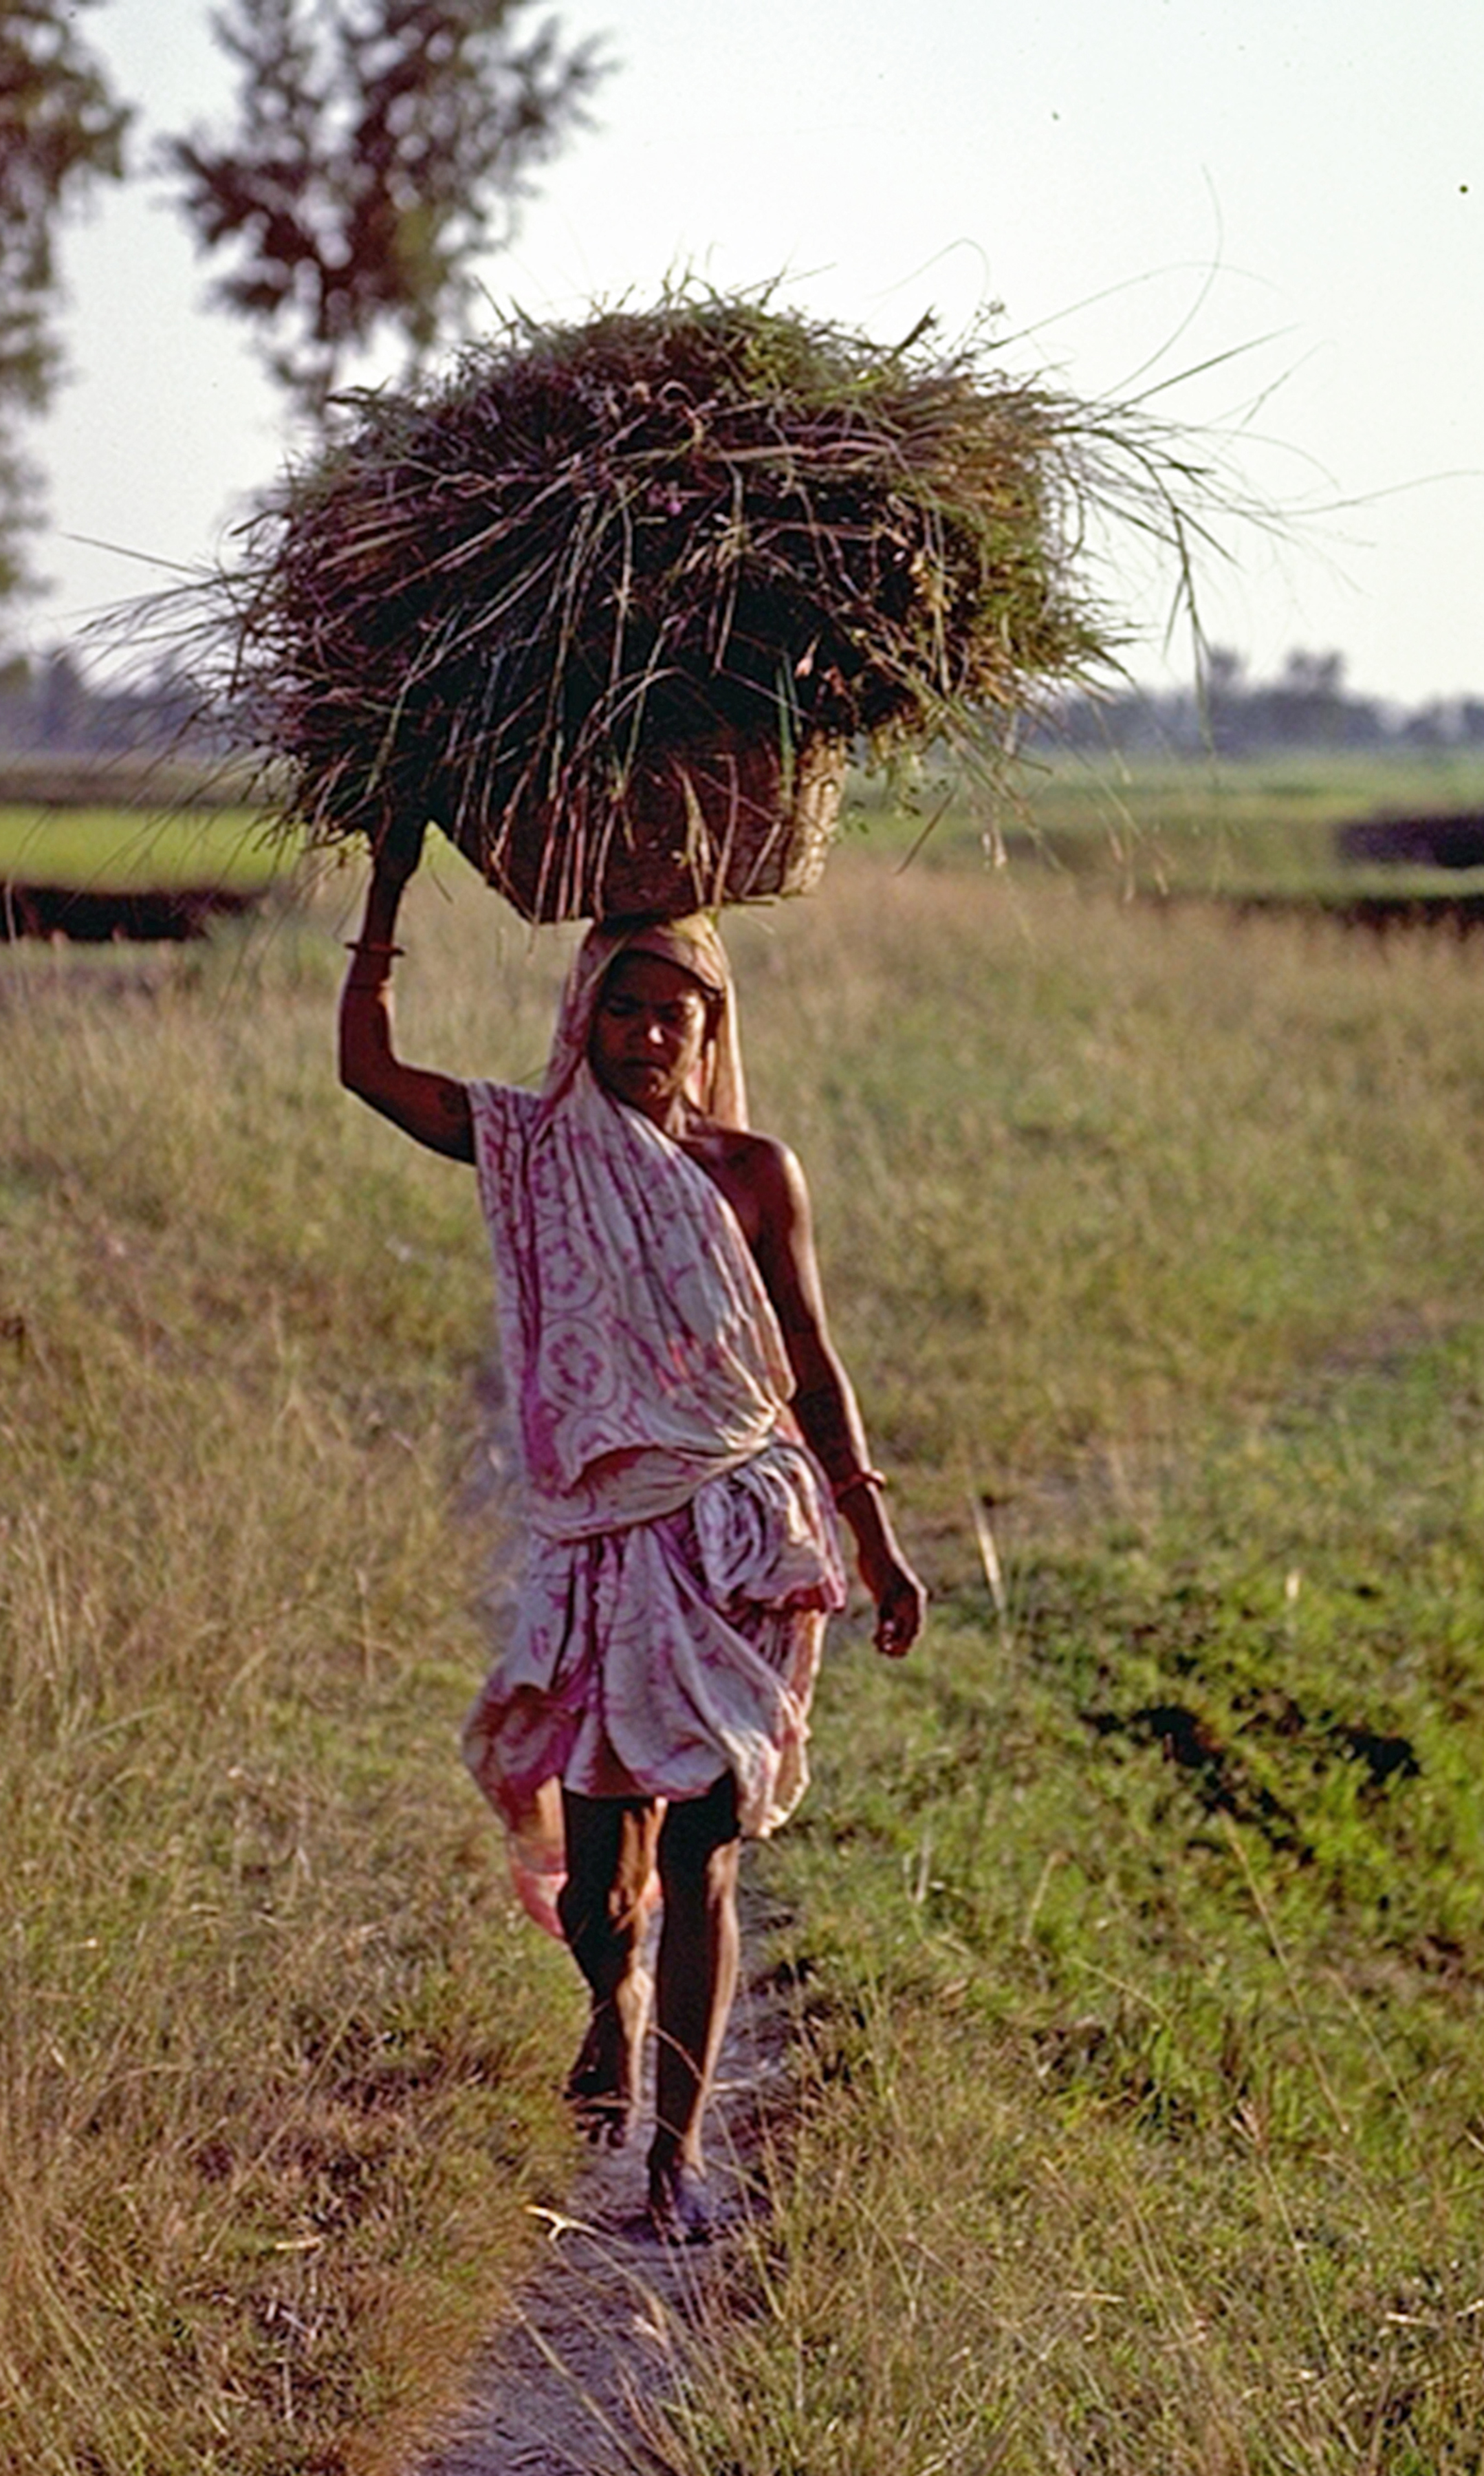 Maithili woman carrying fodder.jpg